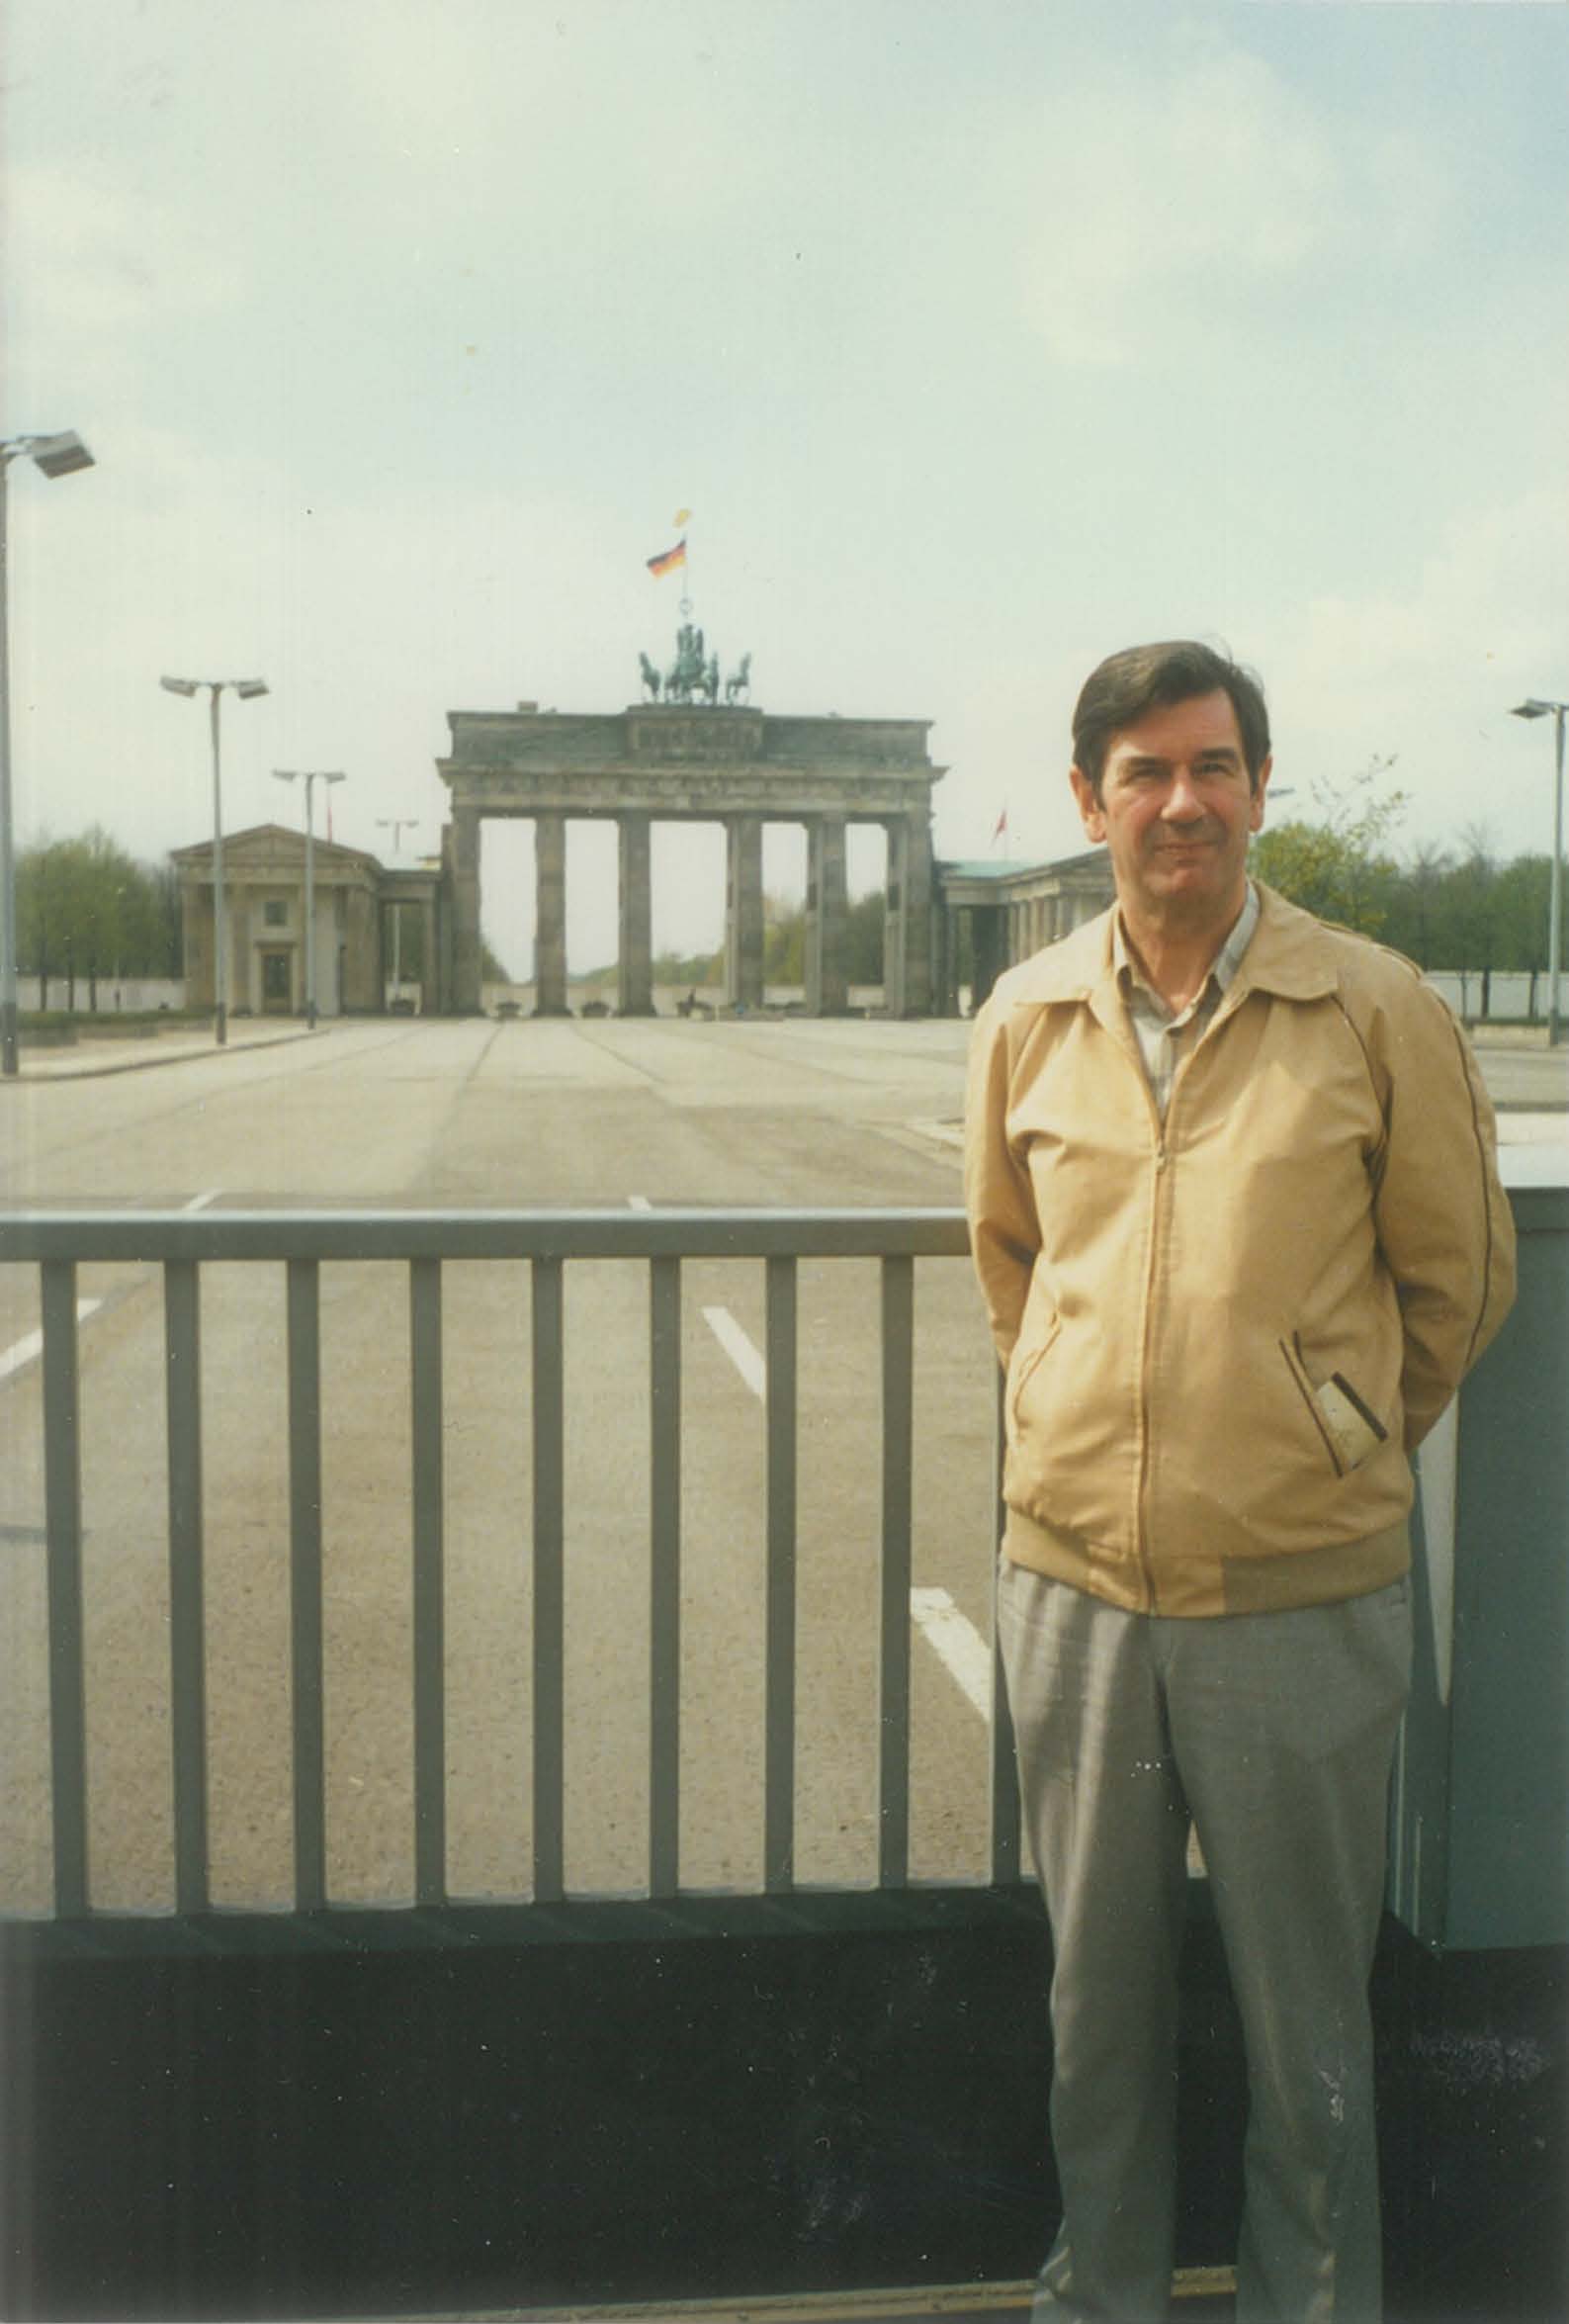 Ian in Berlin